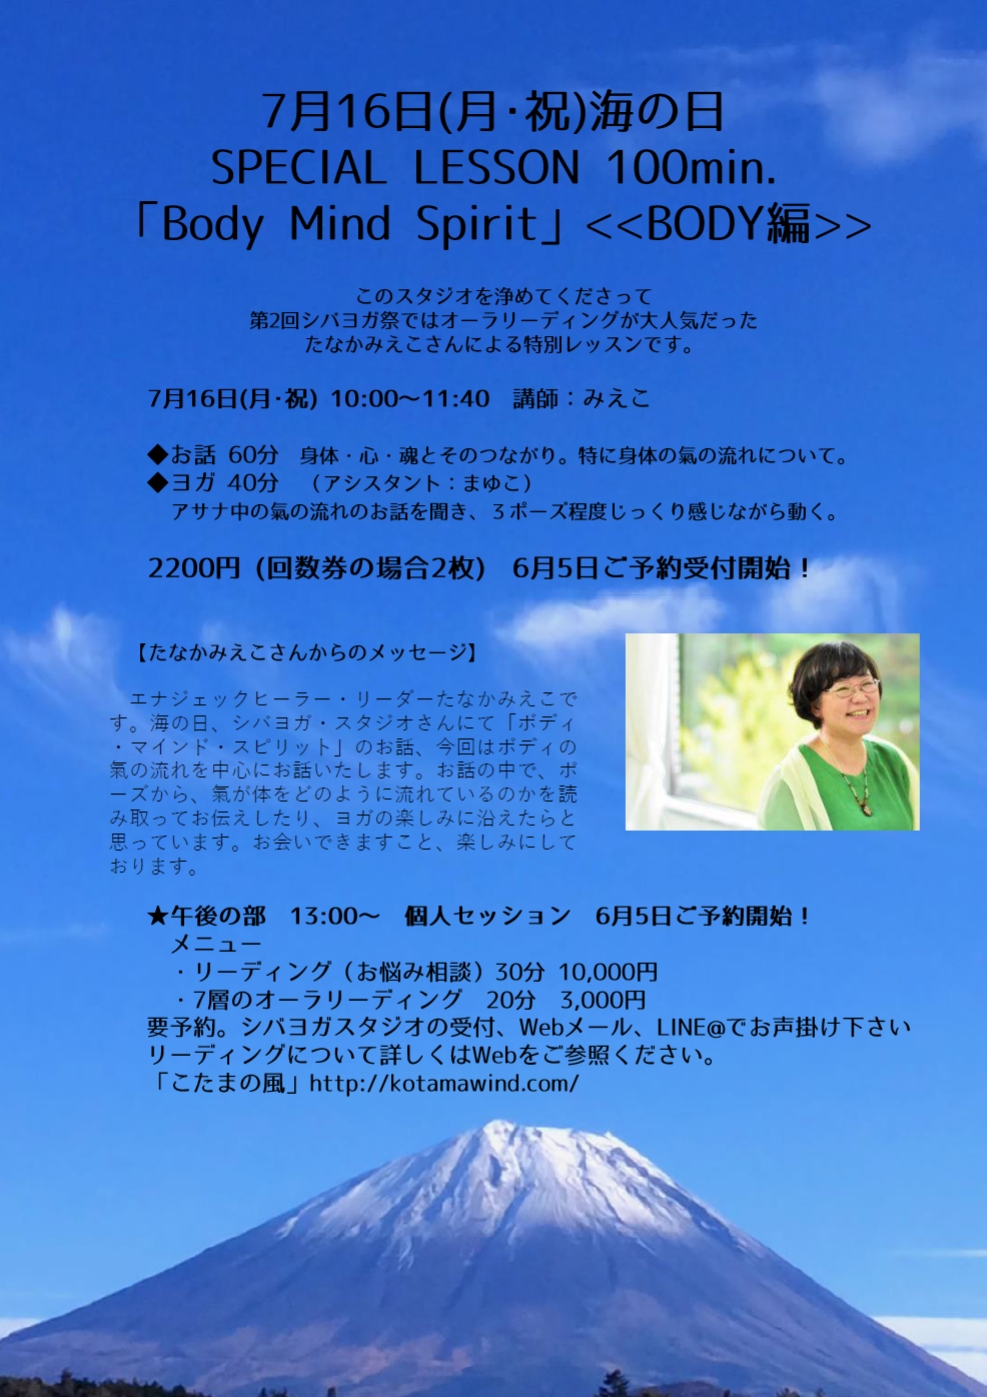 海の日2018特別レッスン「Body Mind Spirit」BODY編